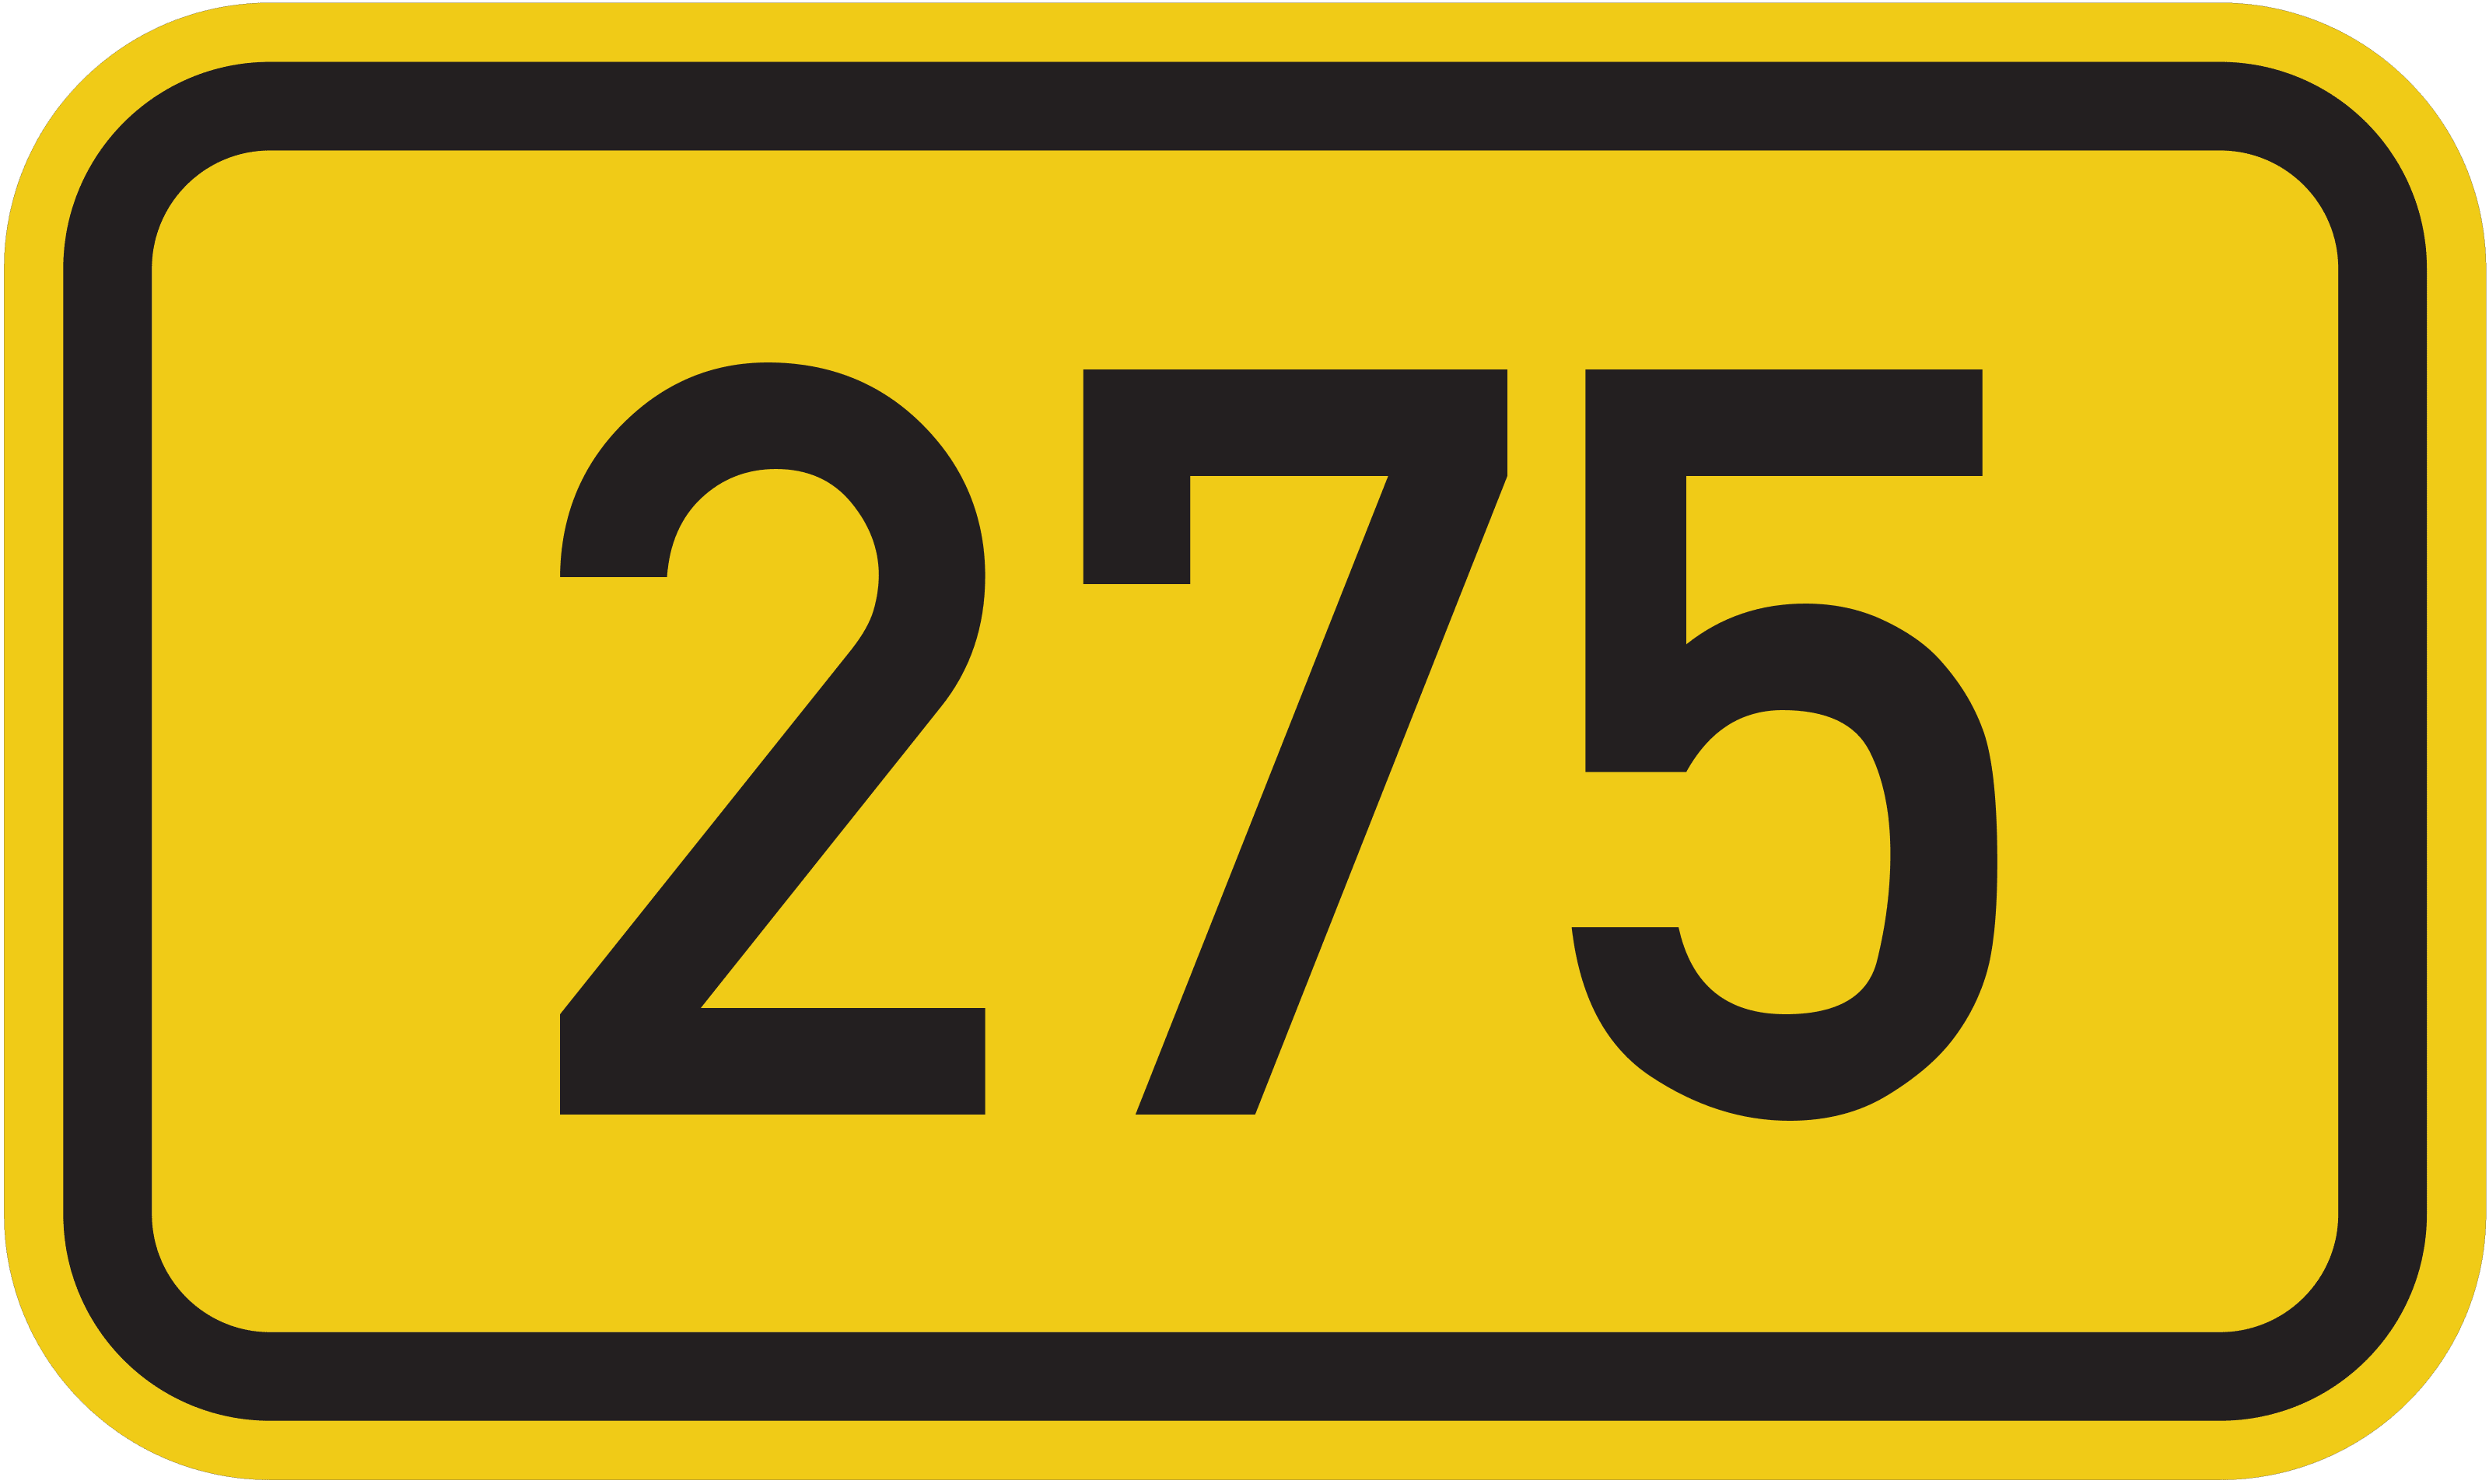 Bundesstraße B 275